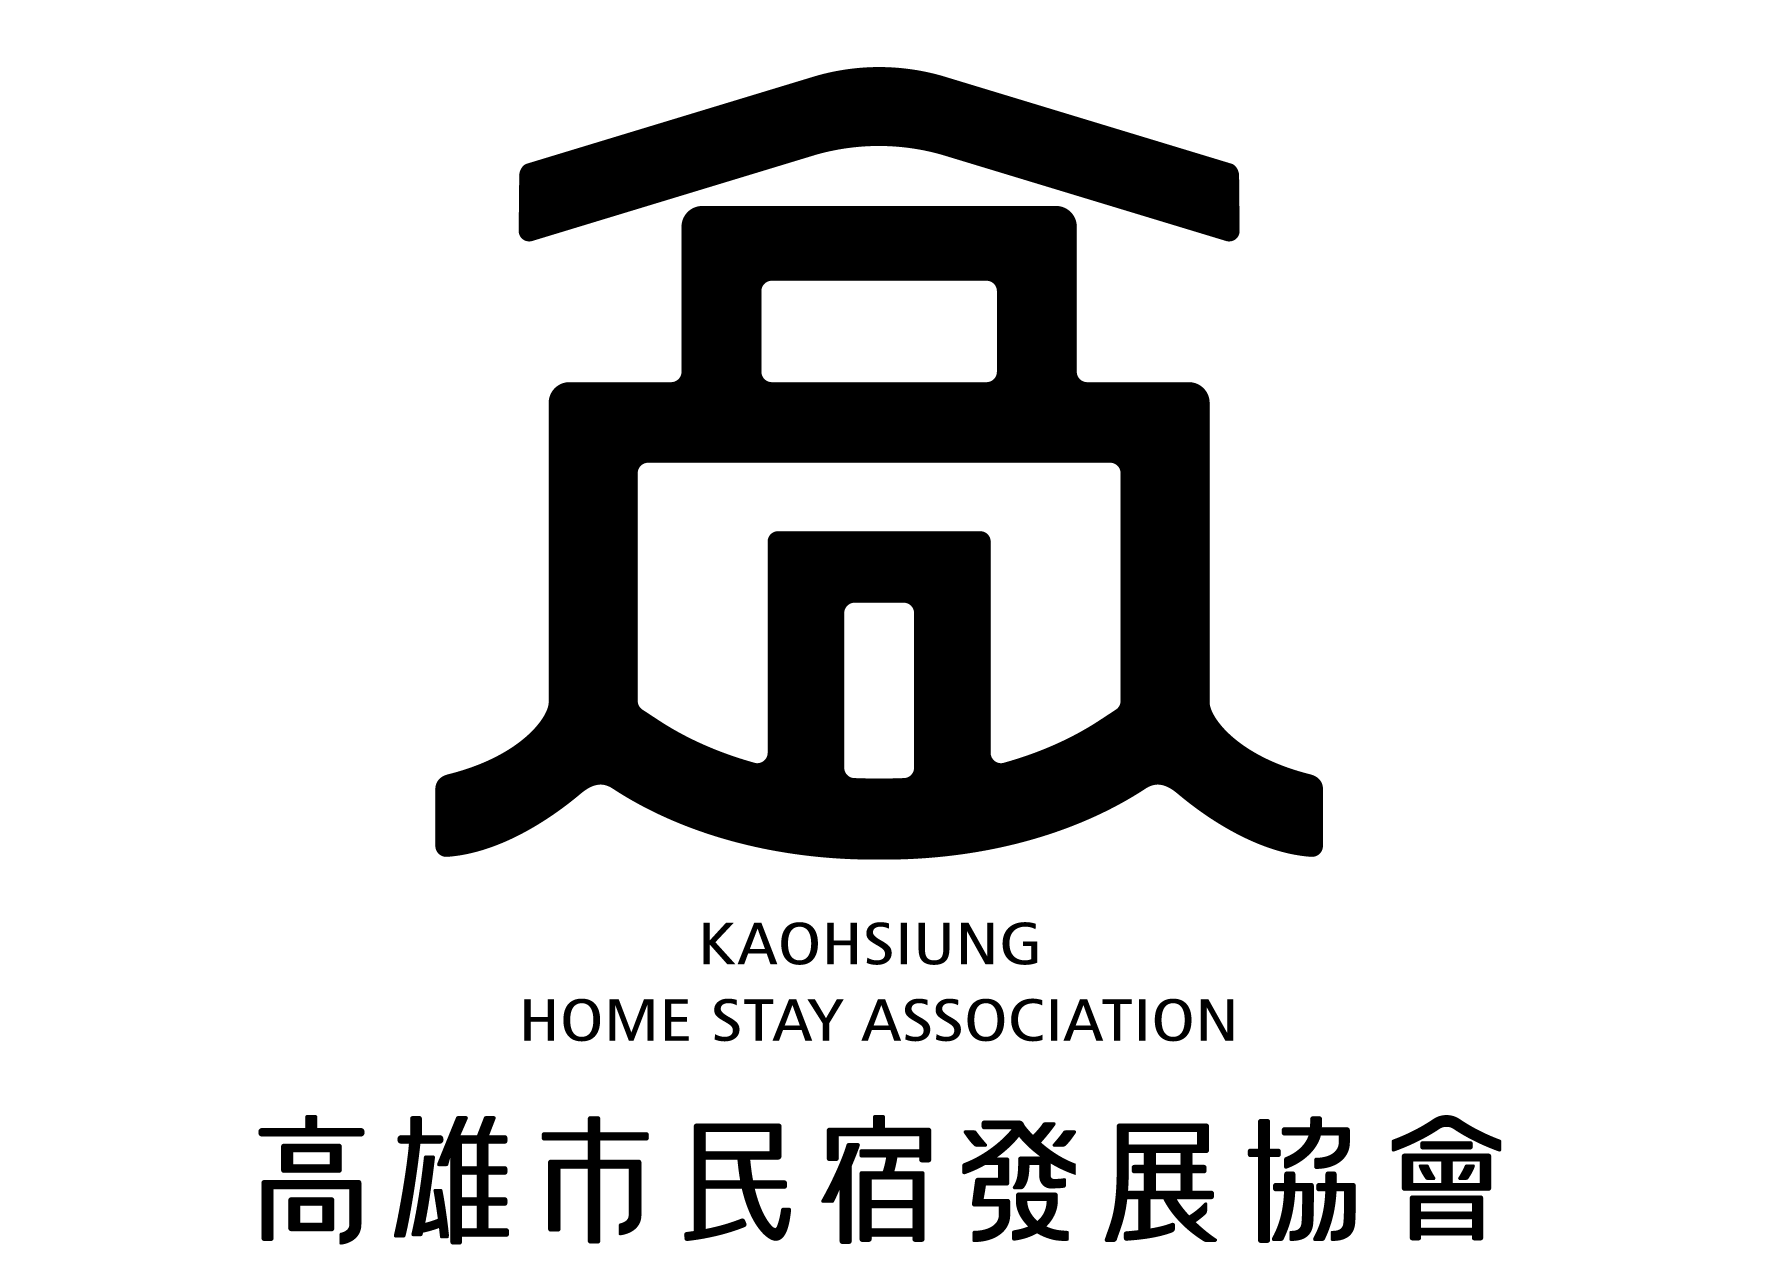 高雄市民宿發展協會_字體+Logo_ol_PNG1